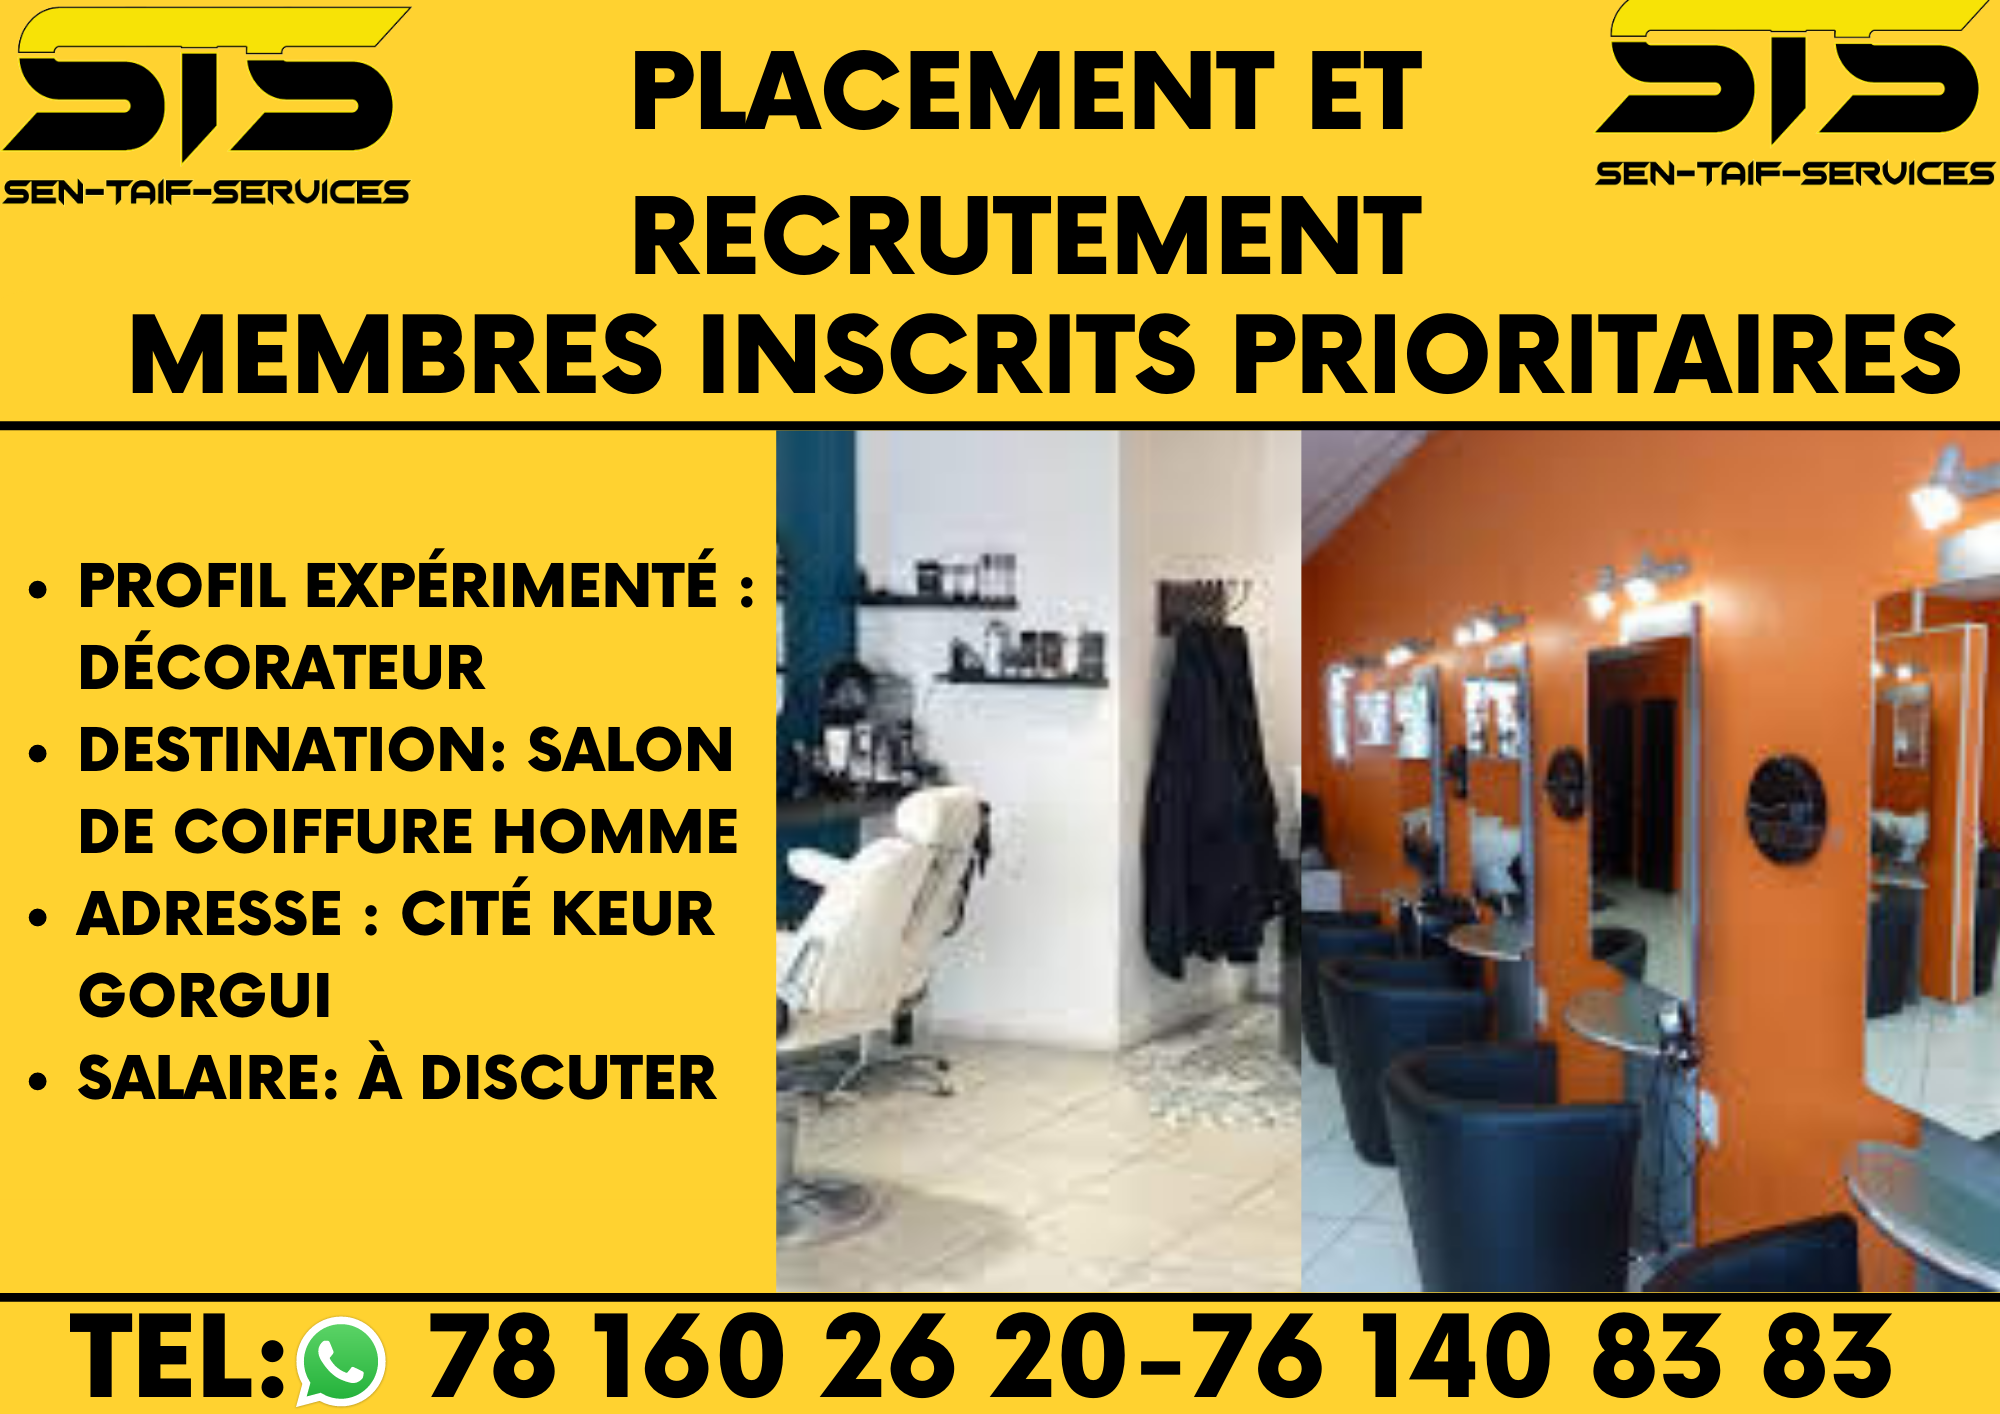 DECORATEUR SALON DE COIFFURE Profil expérimenté : Décorateur
Destination: Salon de coiffure homme
Adresse : Cité Keur Gorgui
Salaire: à discuter